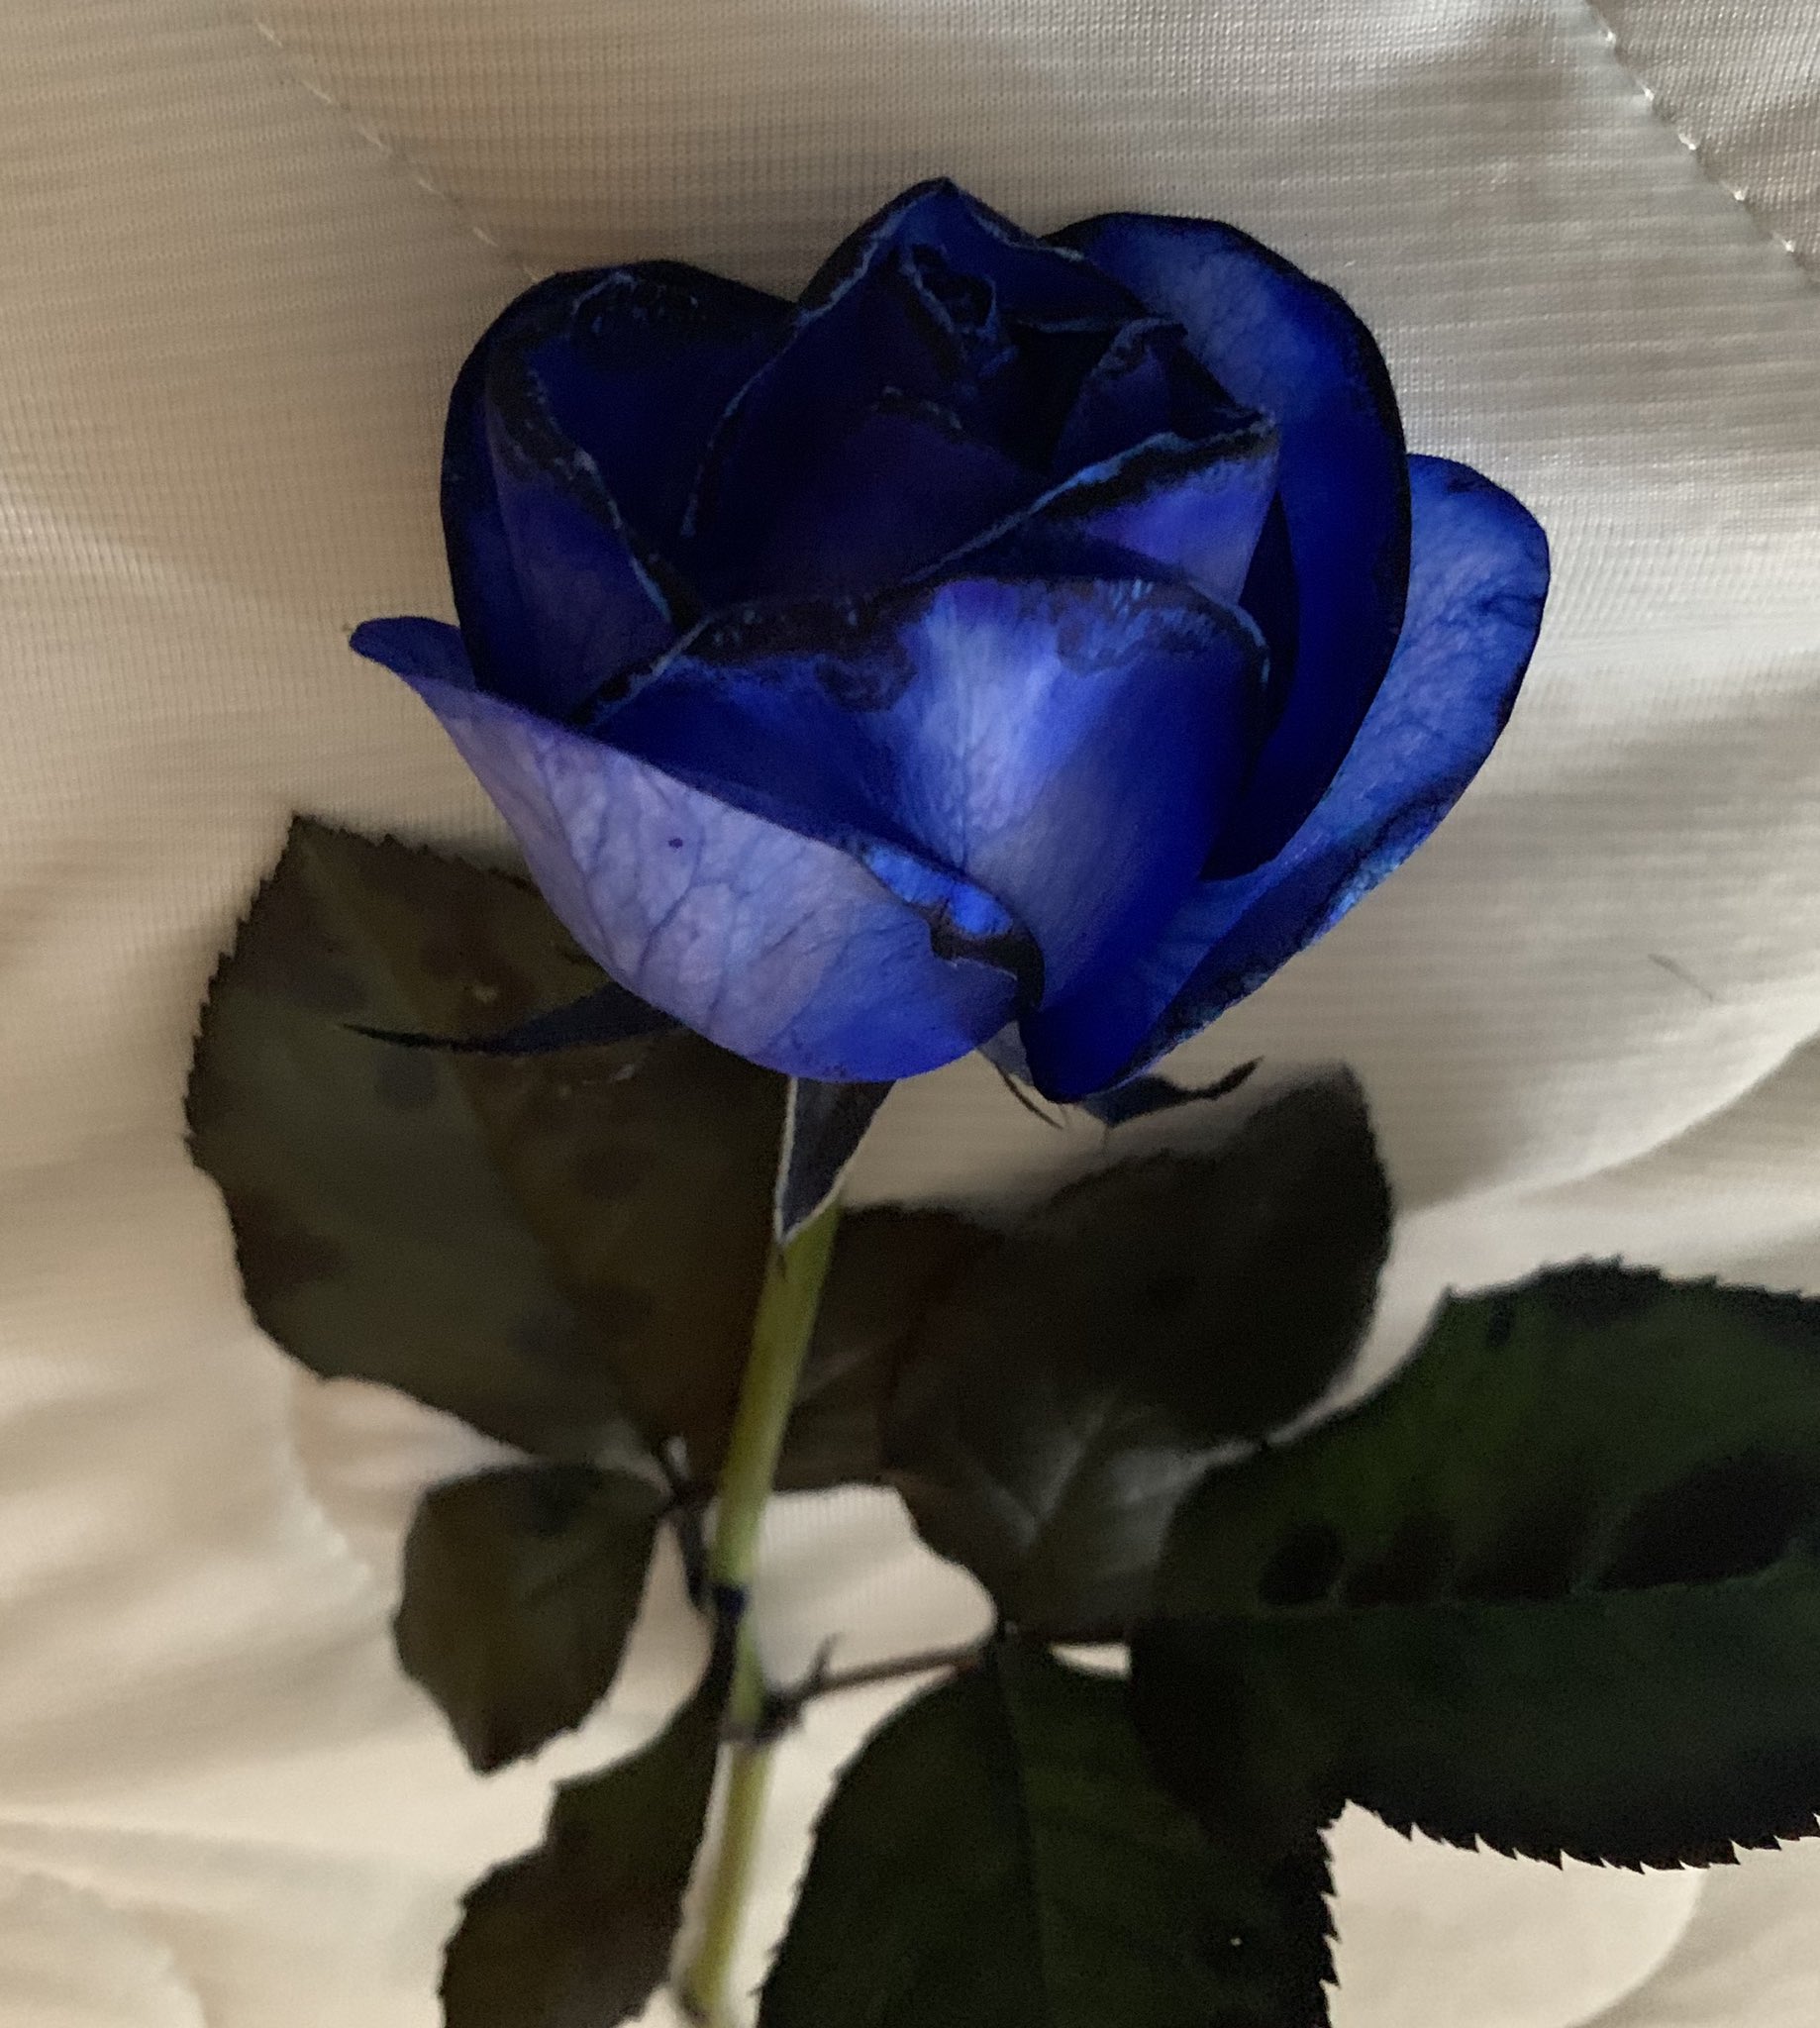 Yoiche 青い薔薇の花言葉は 夢 かなう かつては不可能 存在しないものなどマイナスイメージだったが 02年 日本の研究者たちが遺伝子の組み替えによって世界初の青いバラを誕生させ 花言葉も変わった イエローモンキー再集結など今までいくつもの夢